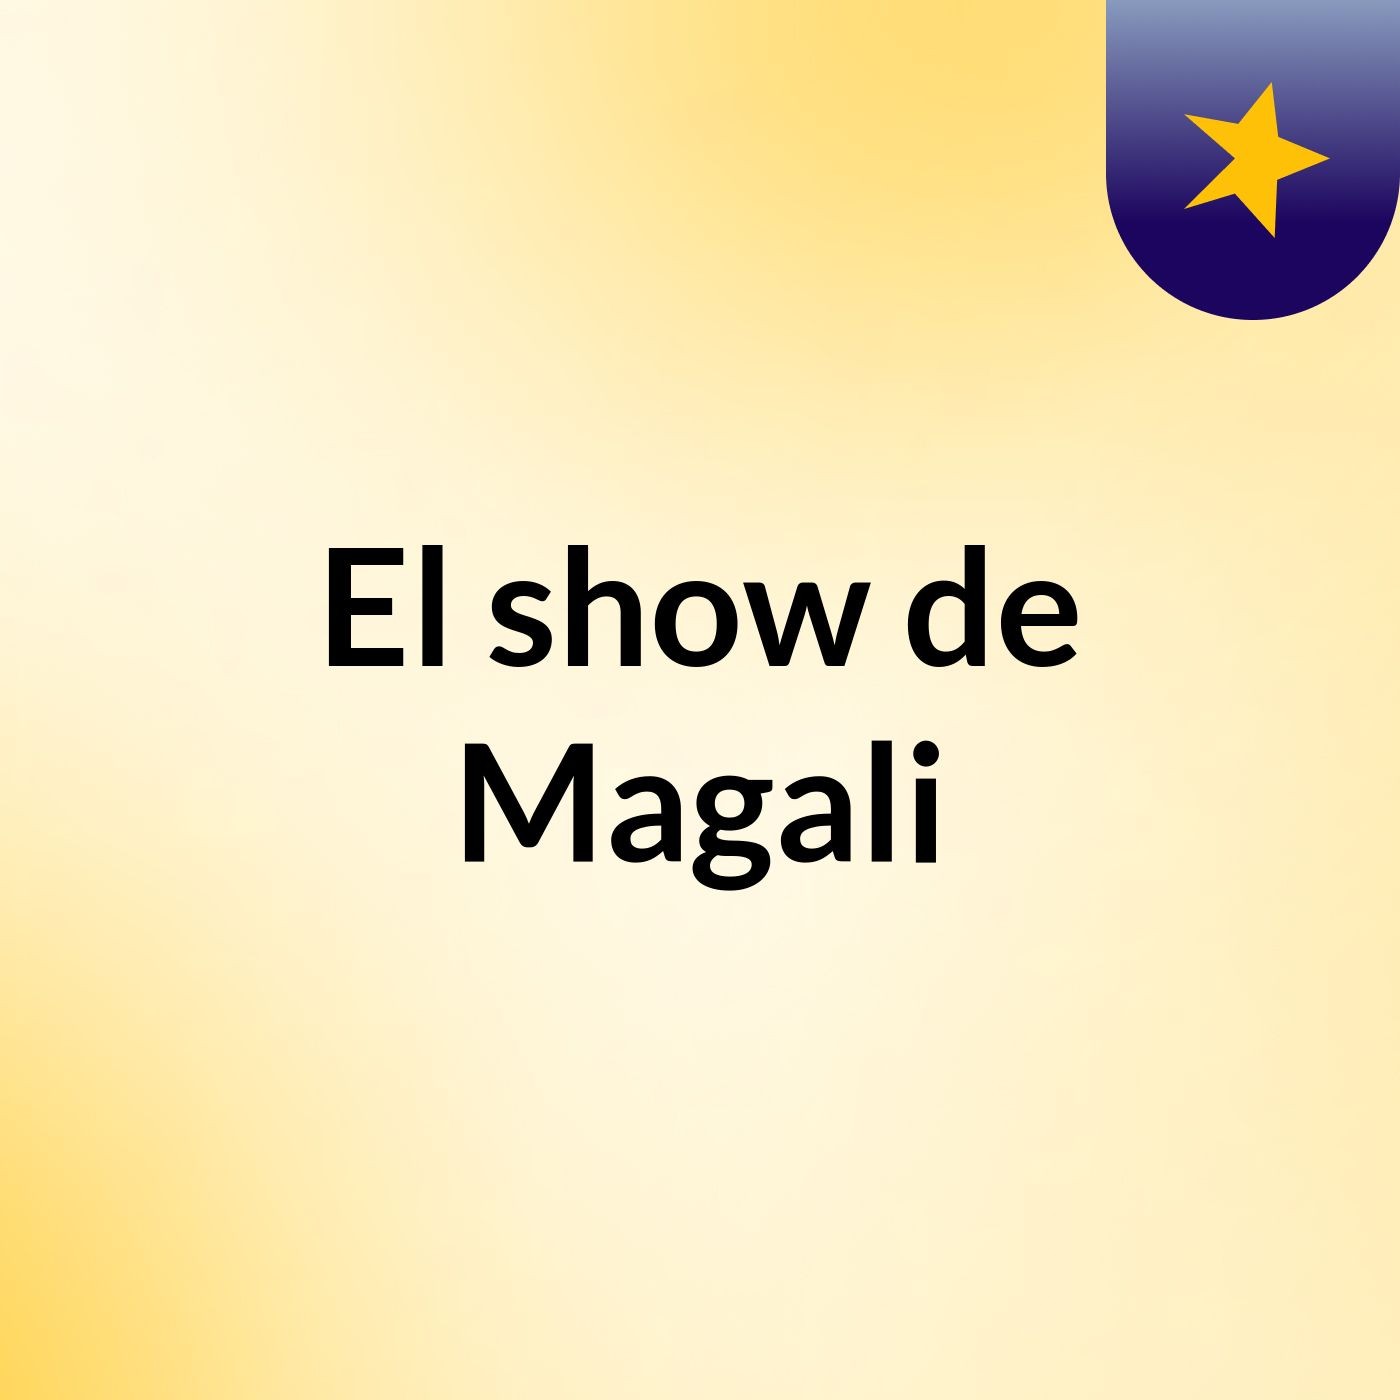 El show de Magali